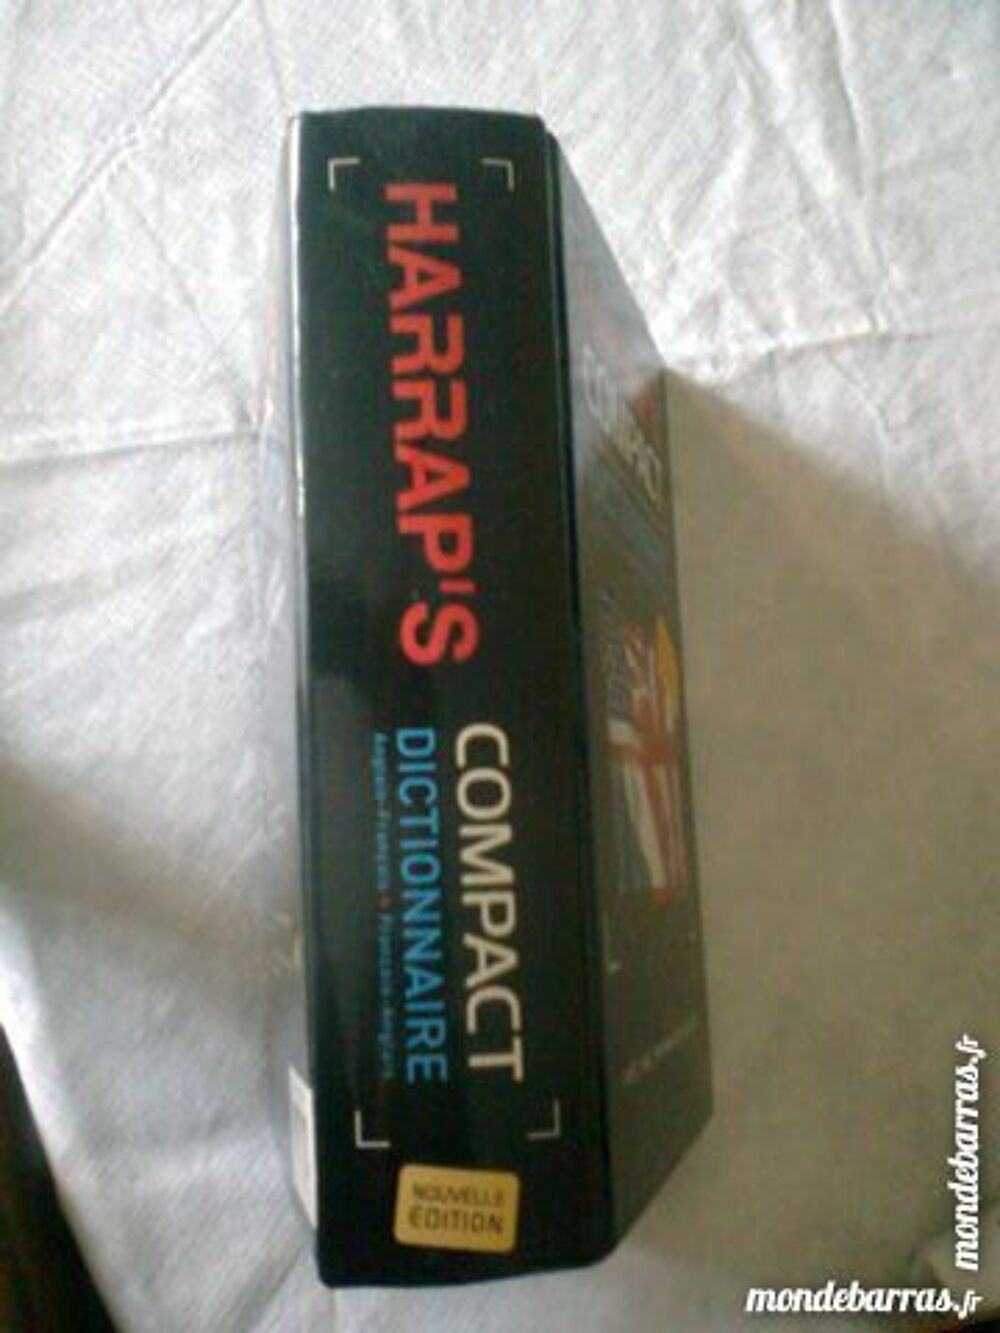 HARRAP'S compact + HARRAP'S business - zoe Livres et BD